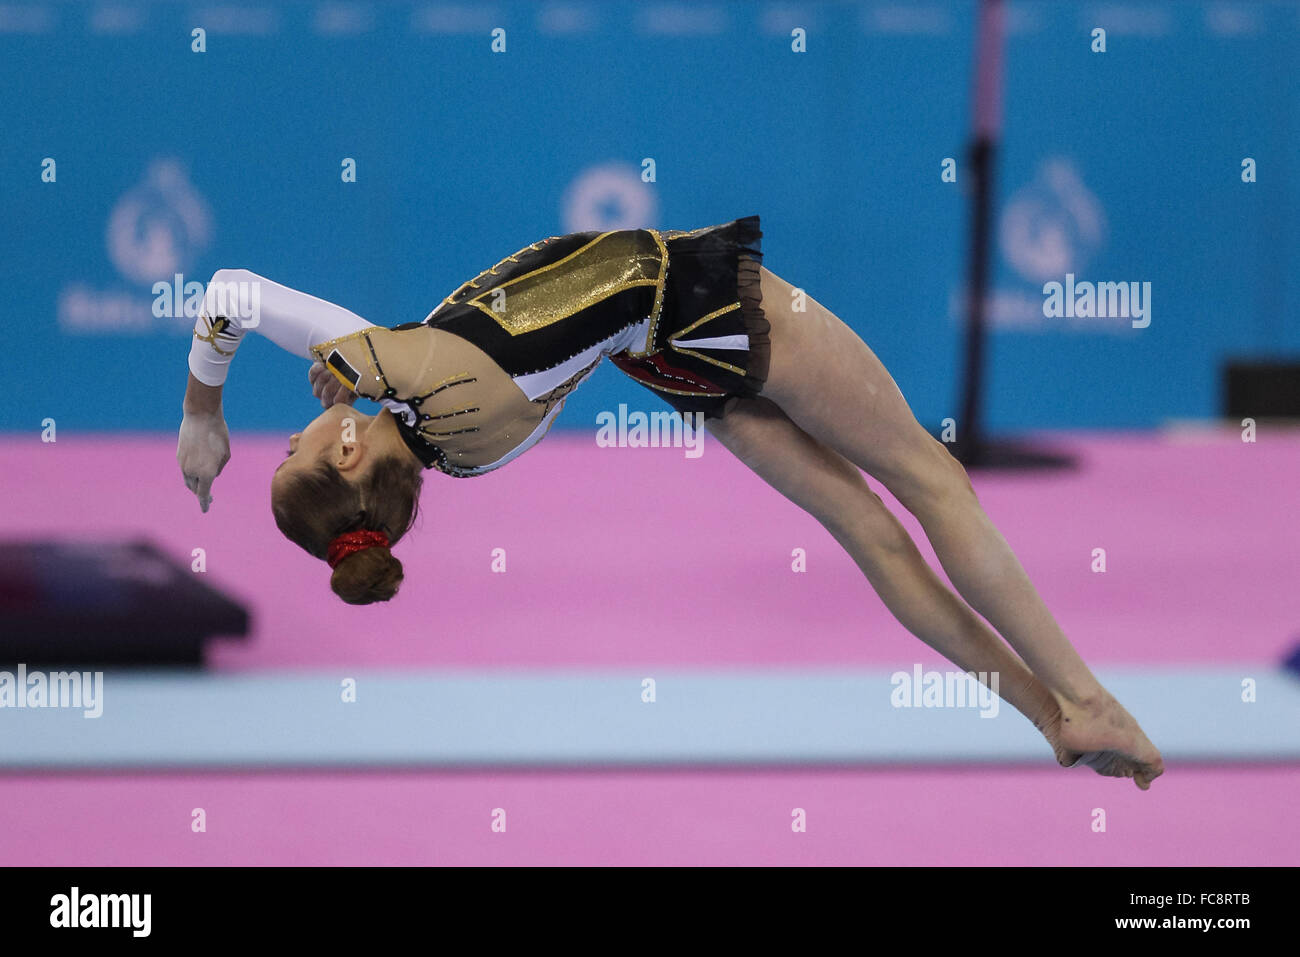 Belgien. Frauengruppe Vielseitige akrobatische Gymnastik. Nationale Gymnastik Arena. Baku 2015. 1. Europäische Spiele. Baku. Aserbaidschan. 19.06.2015. Stockfoto